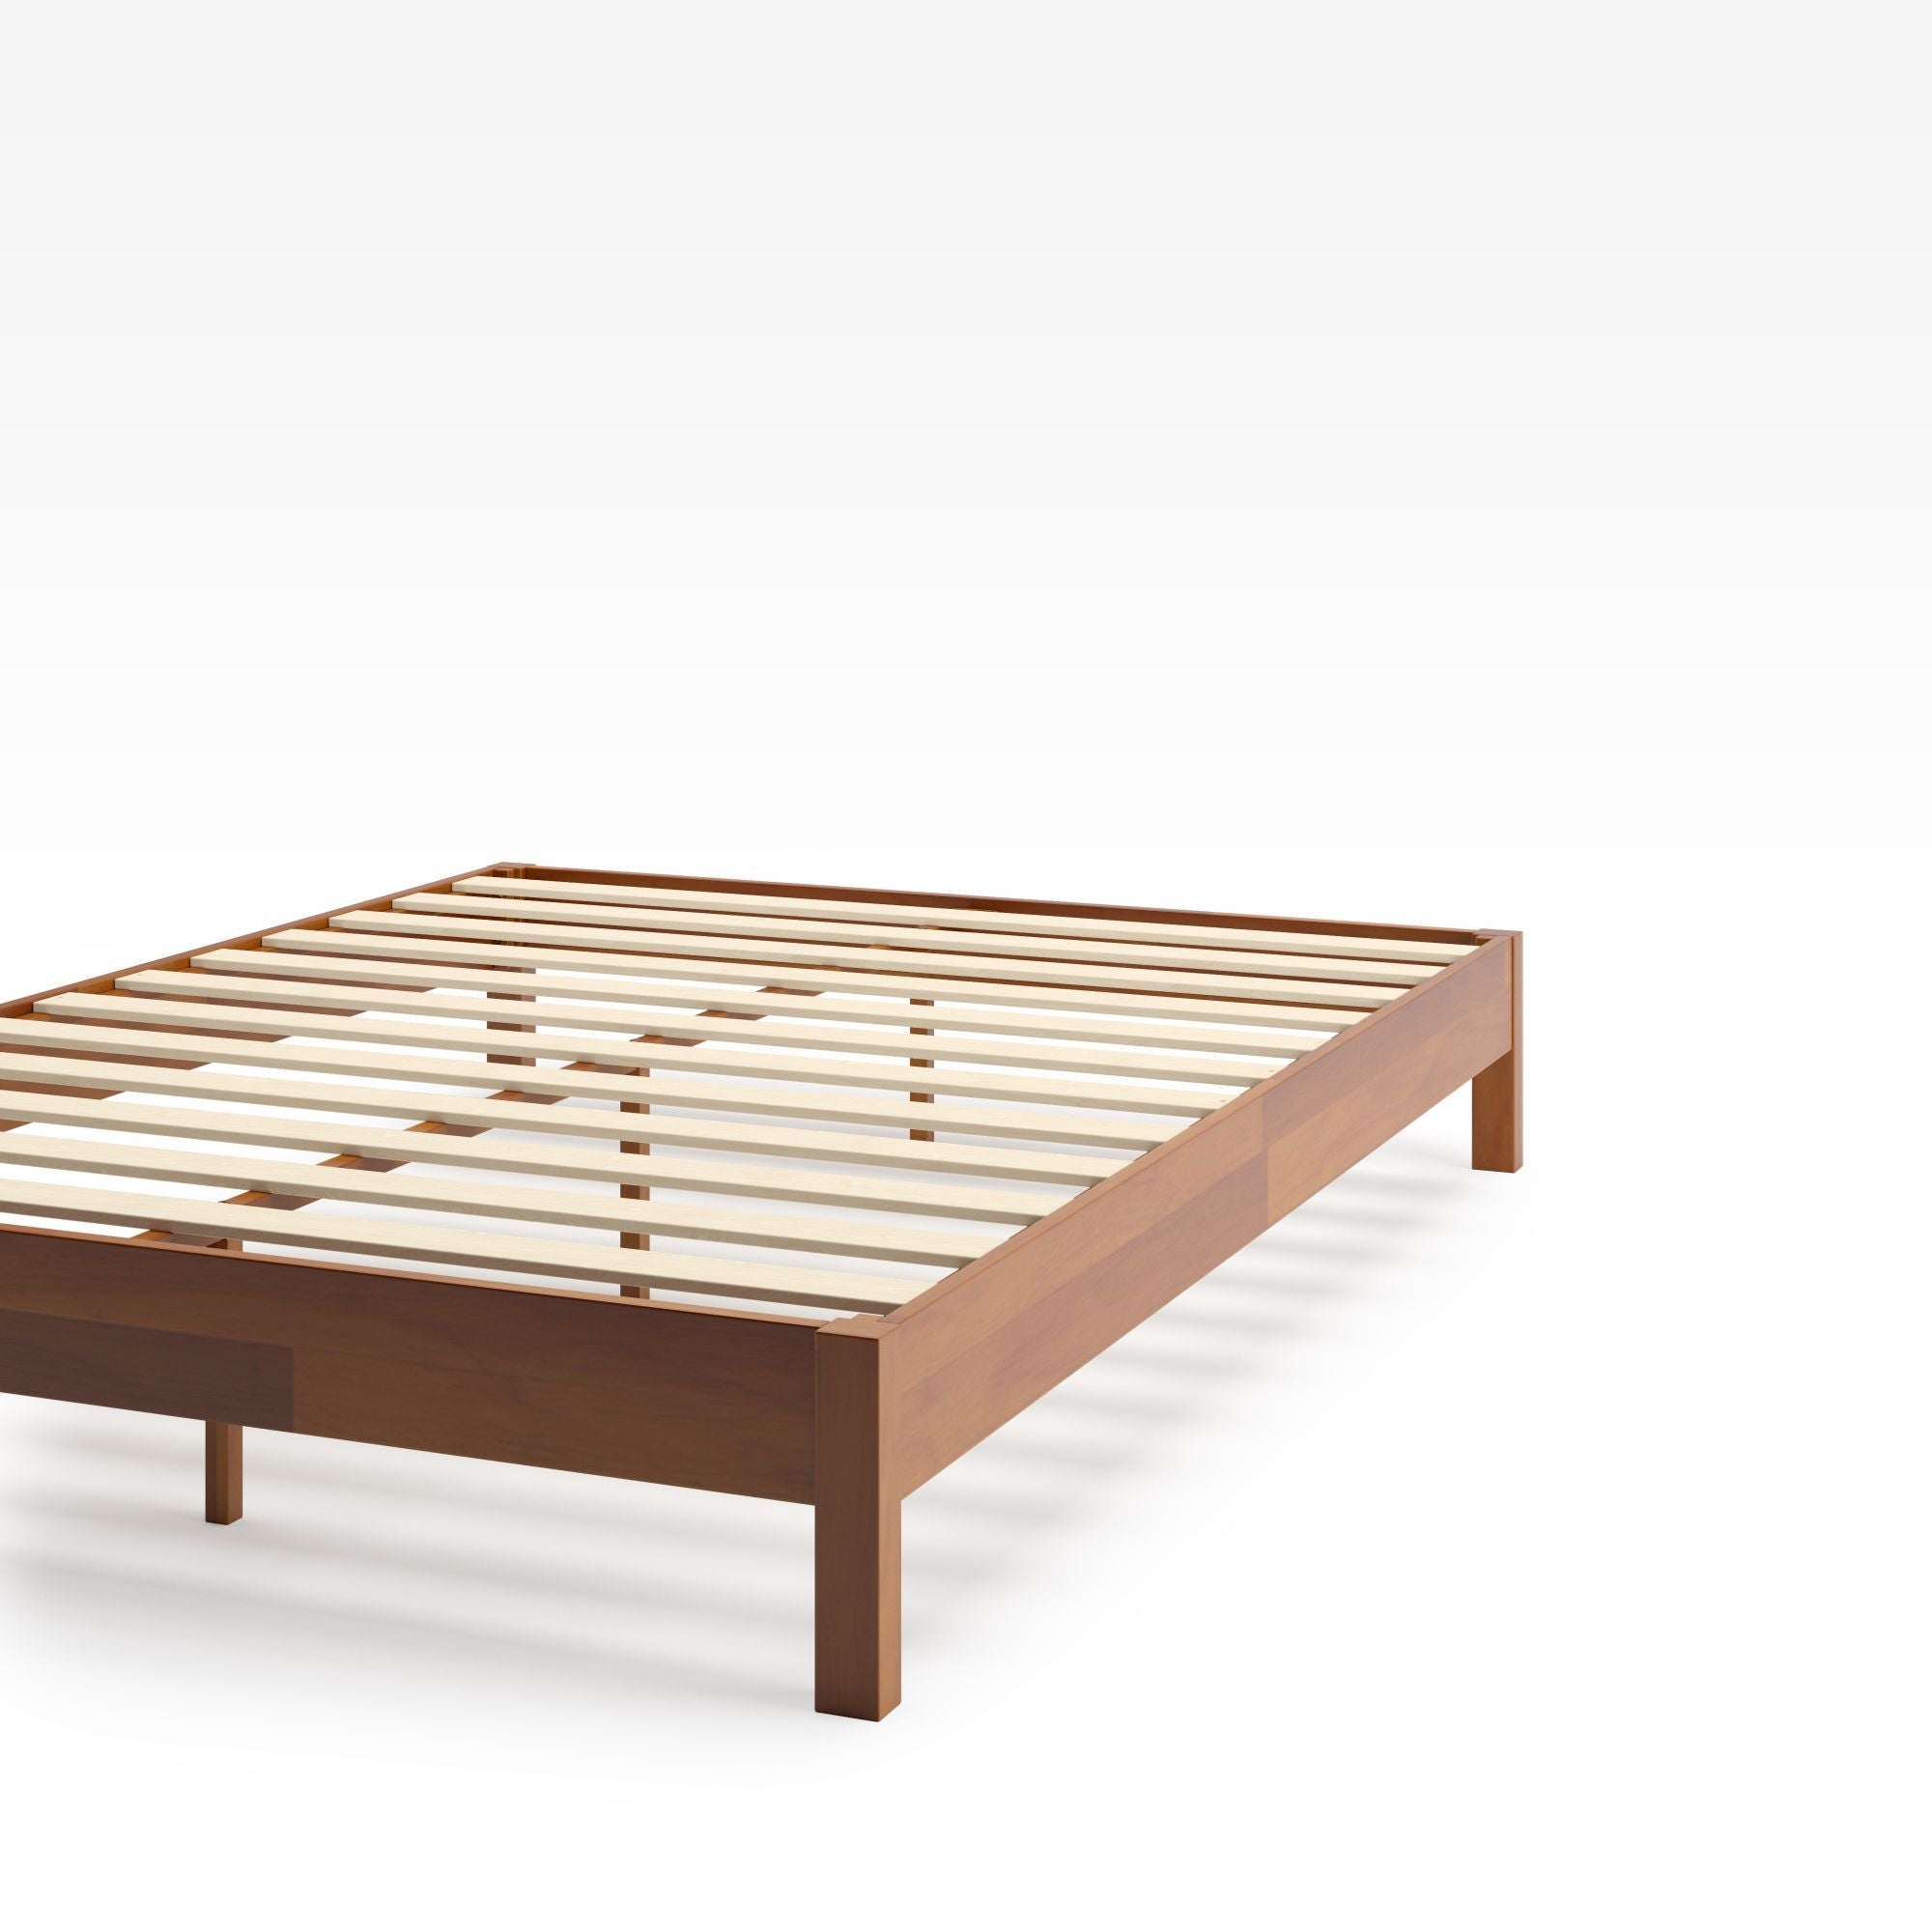 Wen Wood Deluxe Platform Bed Frame